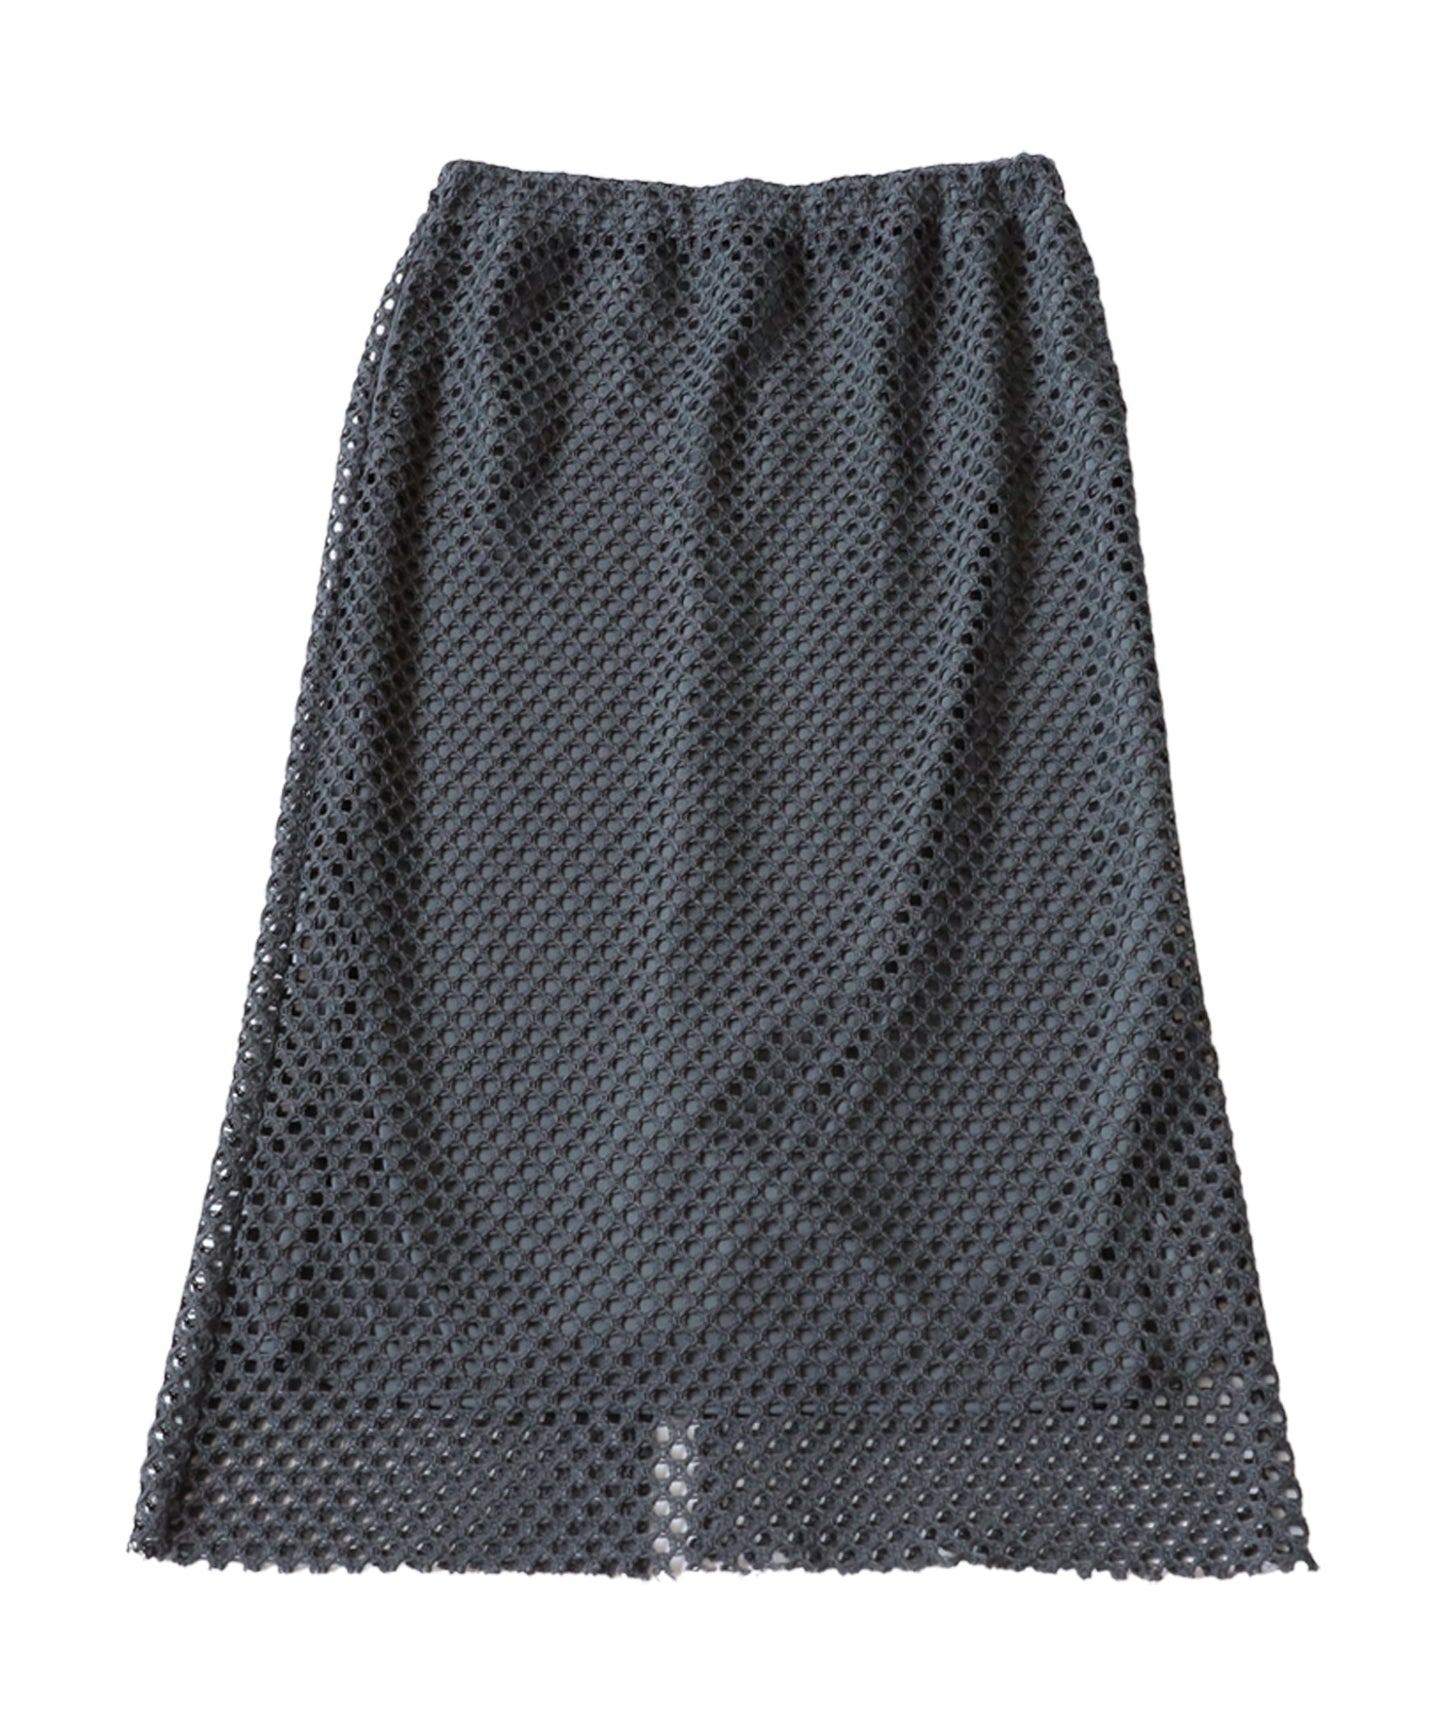 Mesh Knit Skirt Ladies